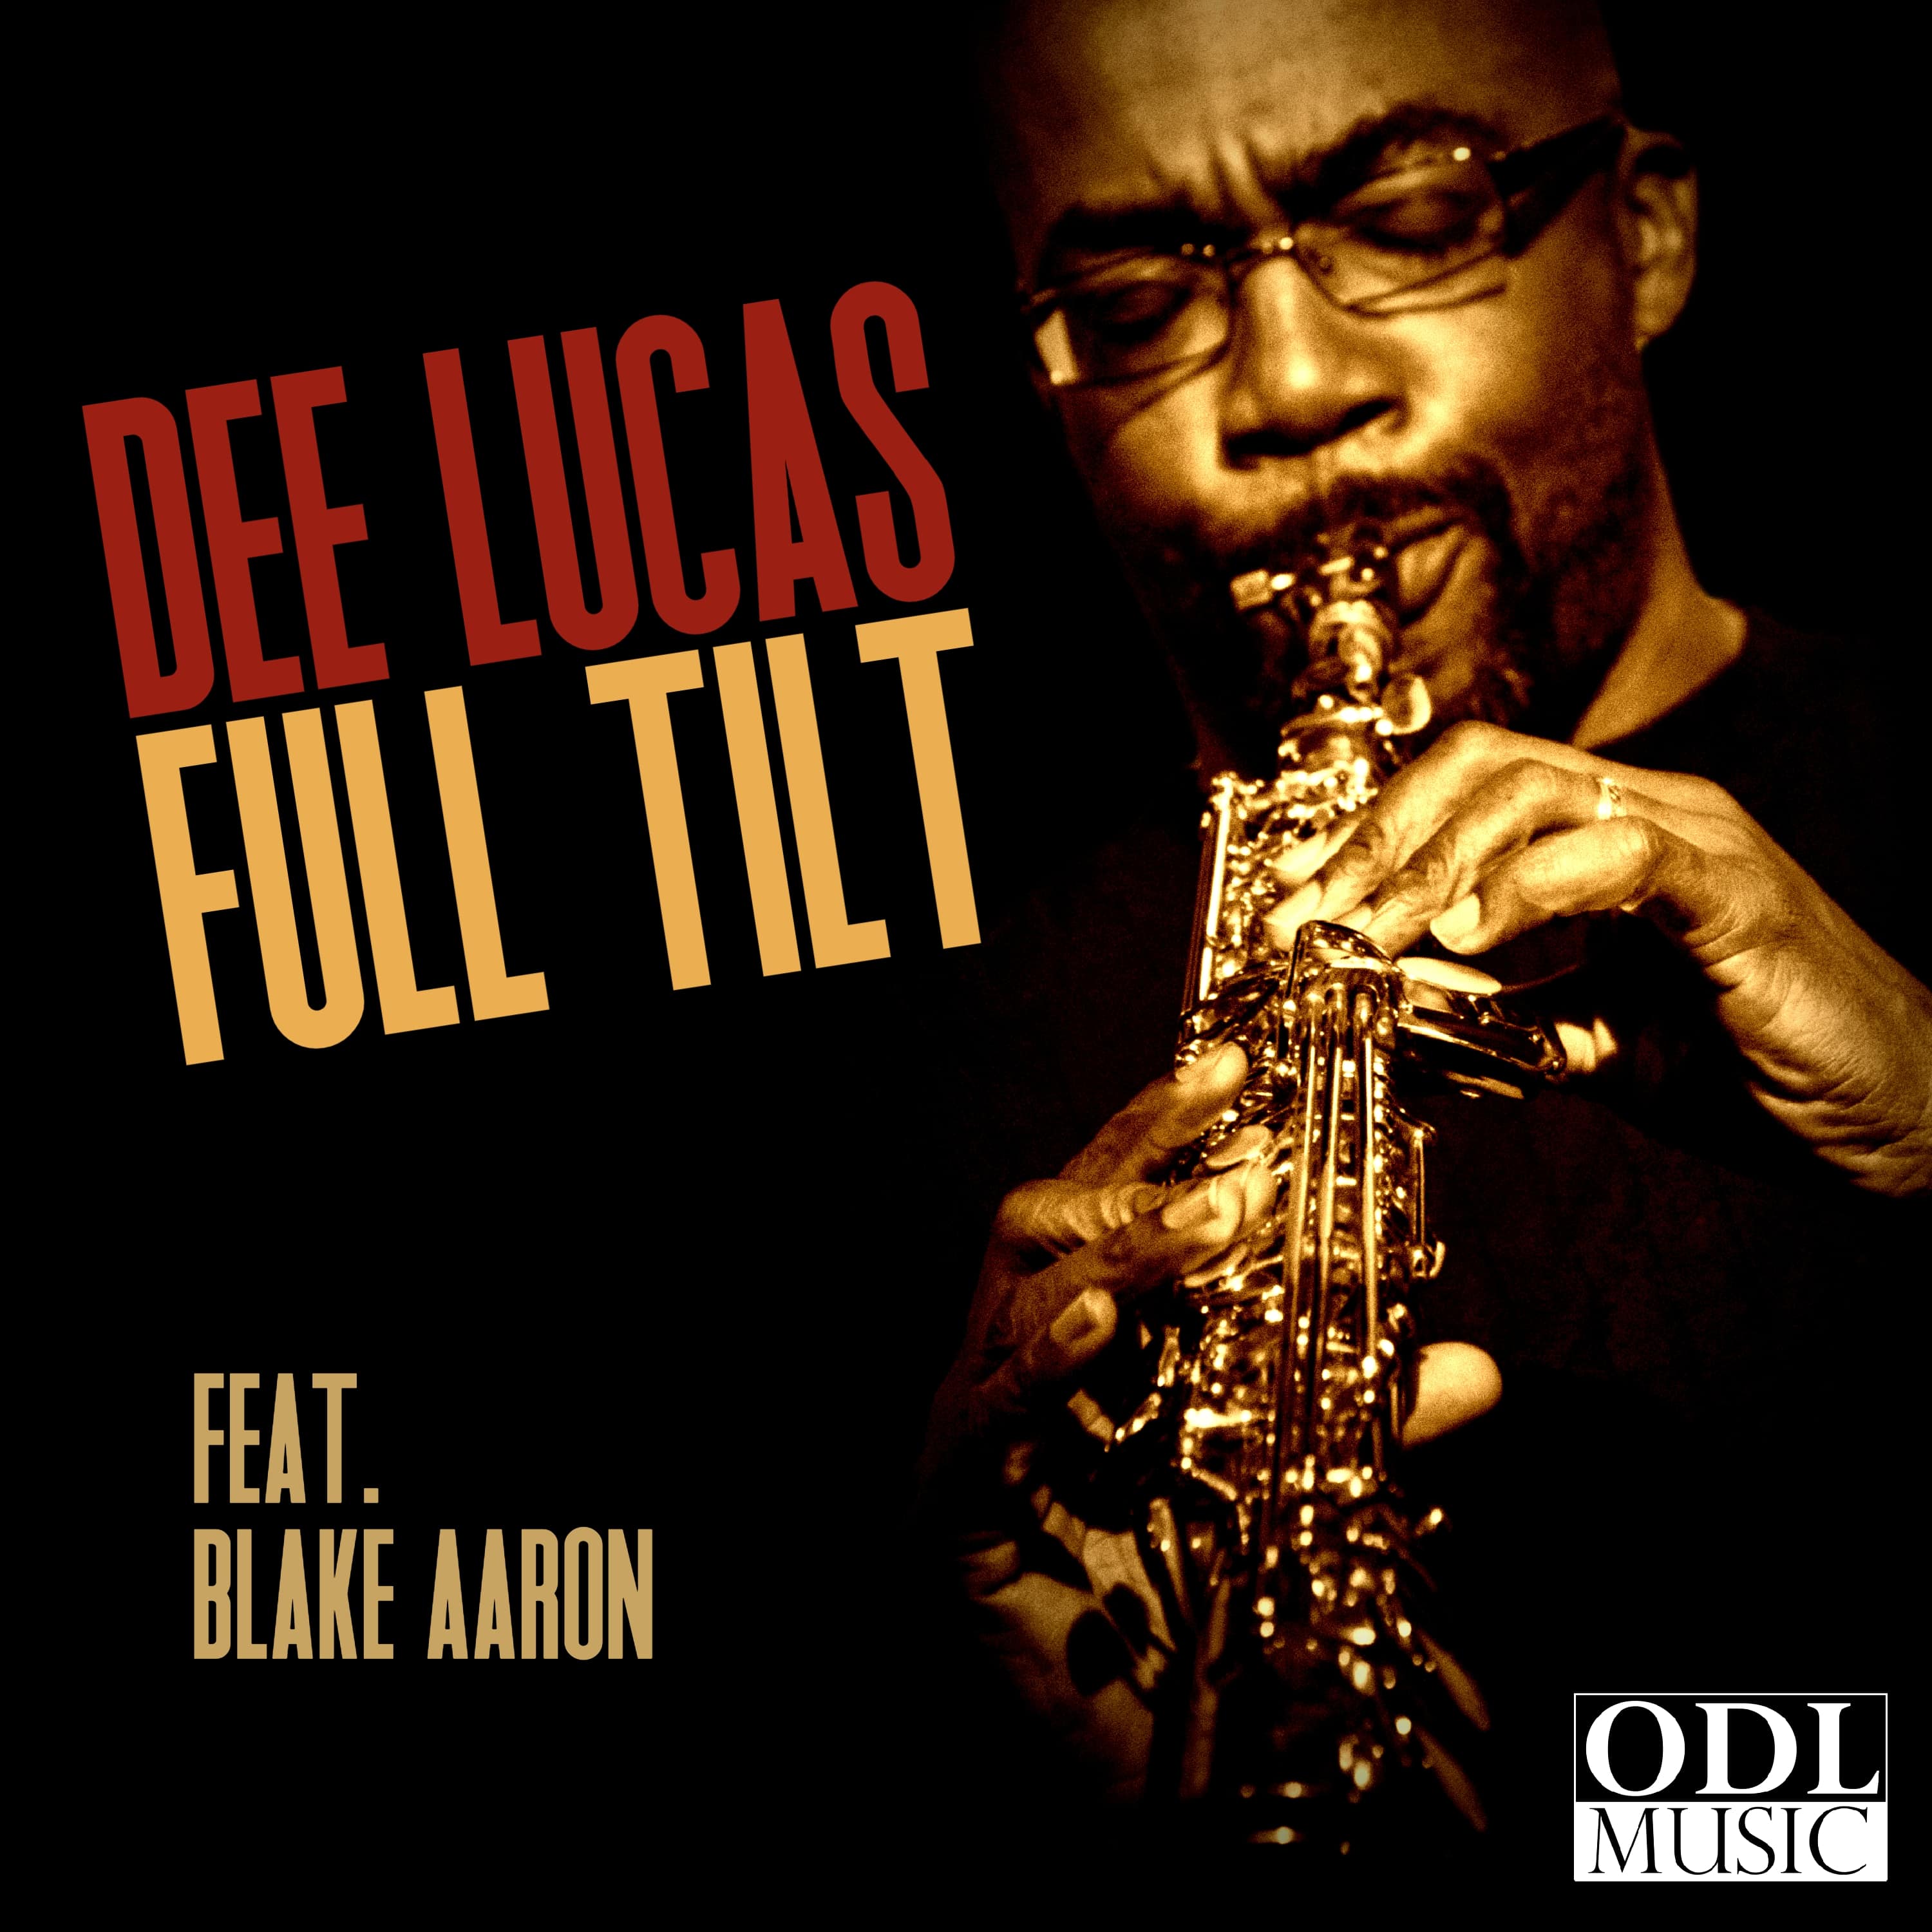 Art for Full Tilt ft. Blake Aaron by Dee Lucas